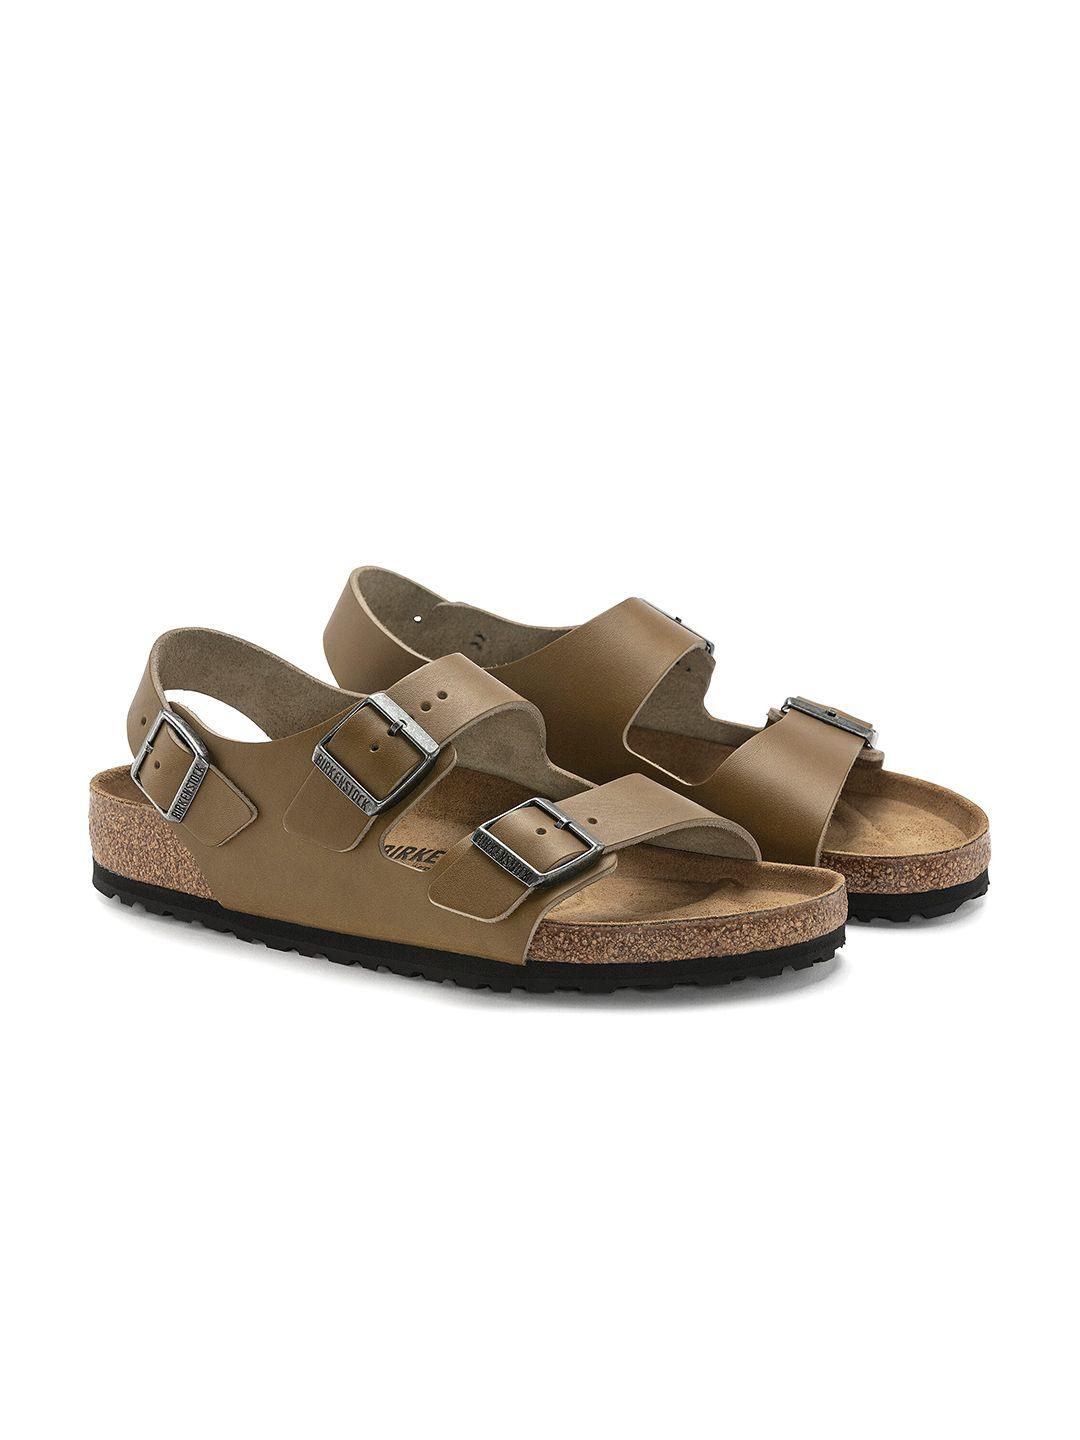 birkenstock men milano bs regular width comfort sandals